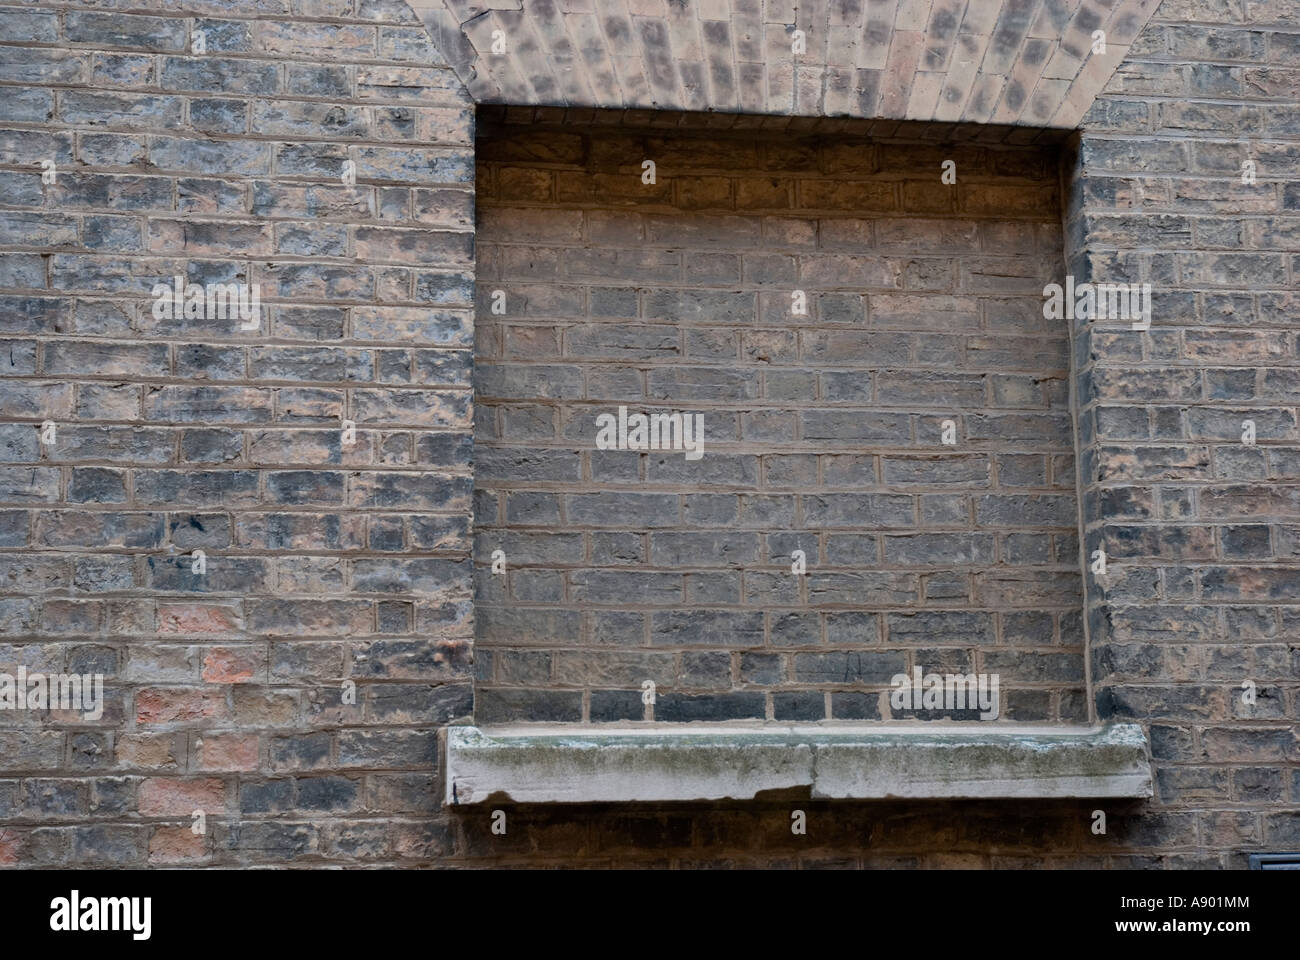 Bricked up window In Cambridge, England Stock Photo